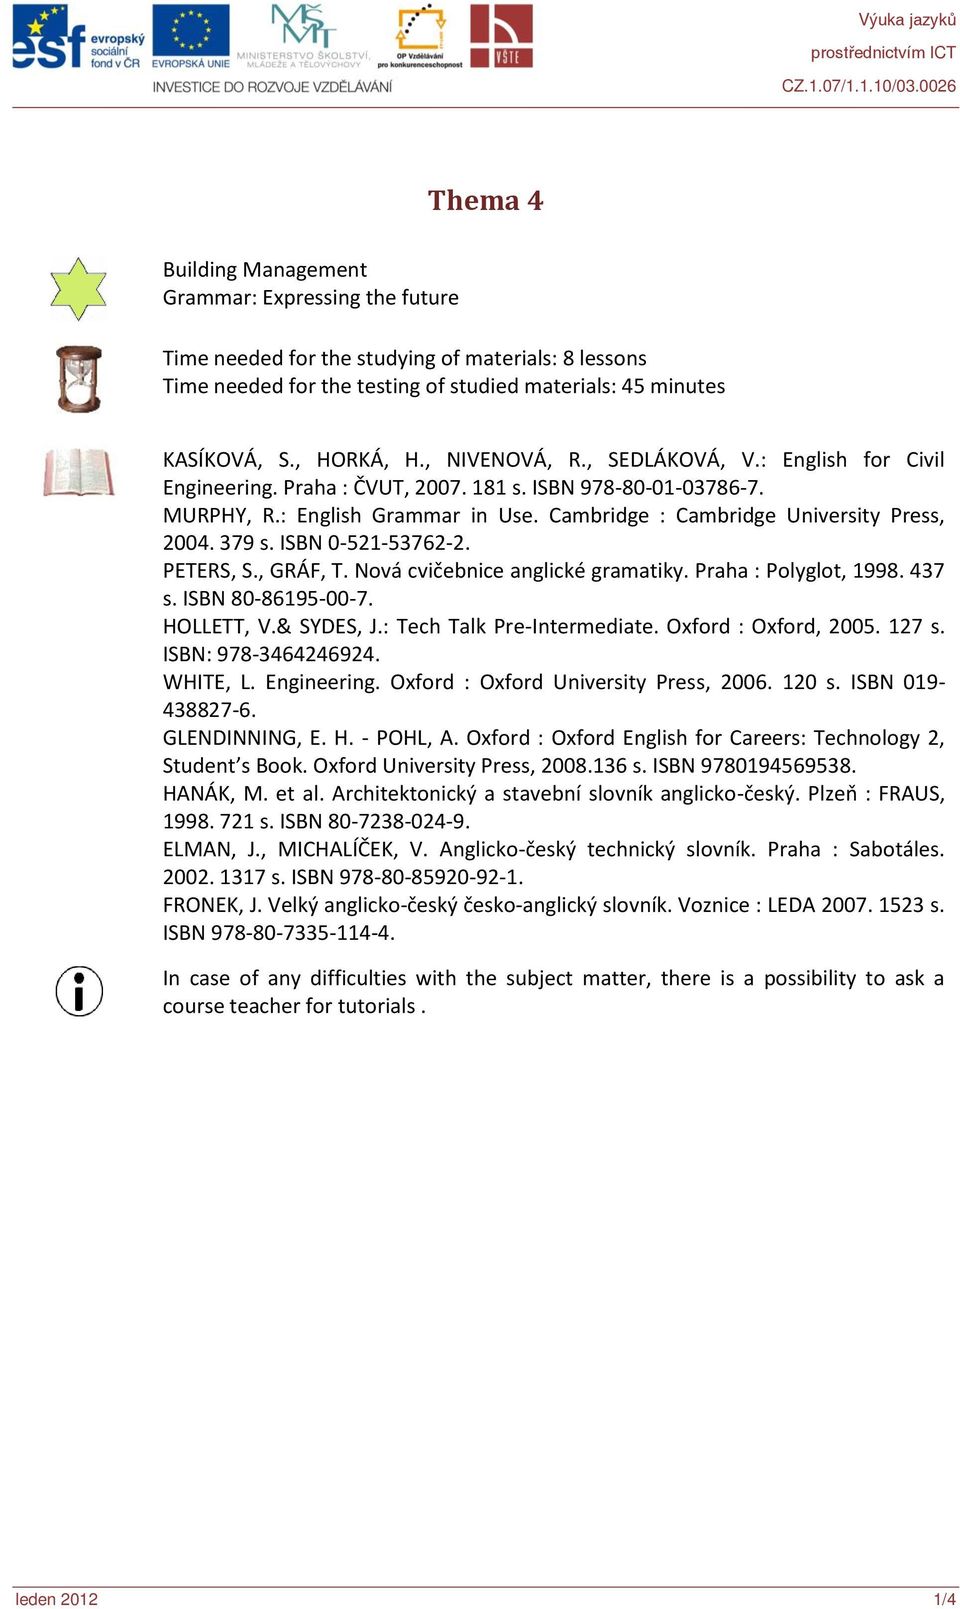 379 s. ISBN 0-521-53762-2. PETERS, S., GRÁF, T. Nová cvičebnice anglické gramatiky. Praha : Polyglot, 1998. 437 s. ISBN 80-86195-00-7. HOLLETT, V.& SYDES, J.: Tech Talk Pre-Intermediate.